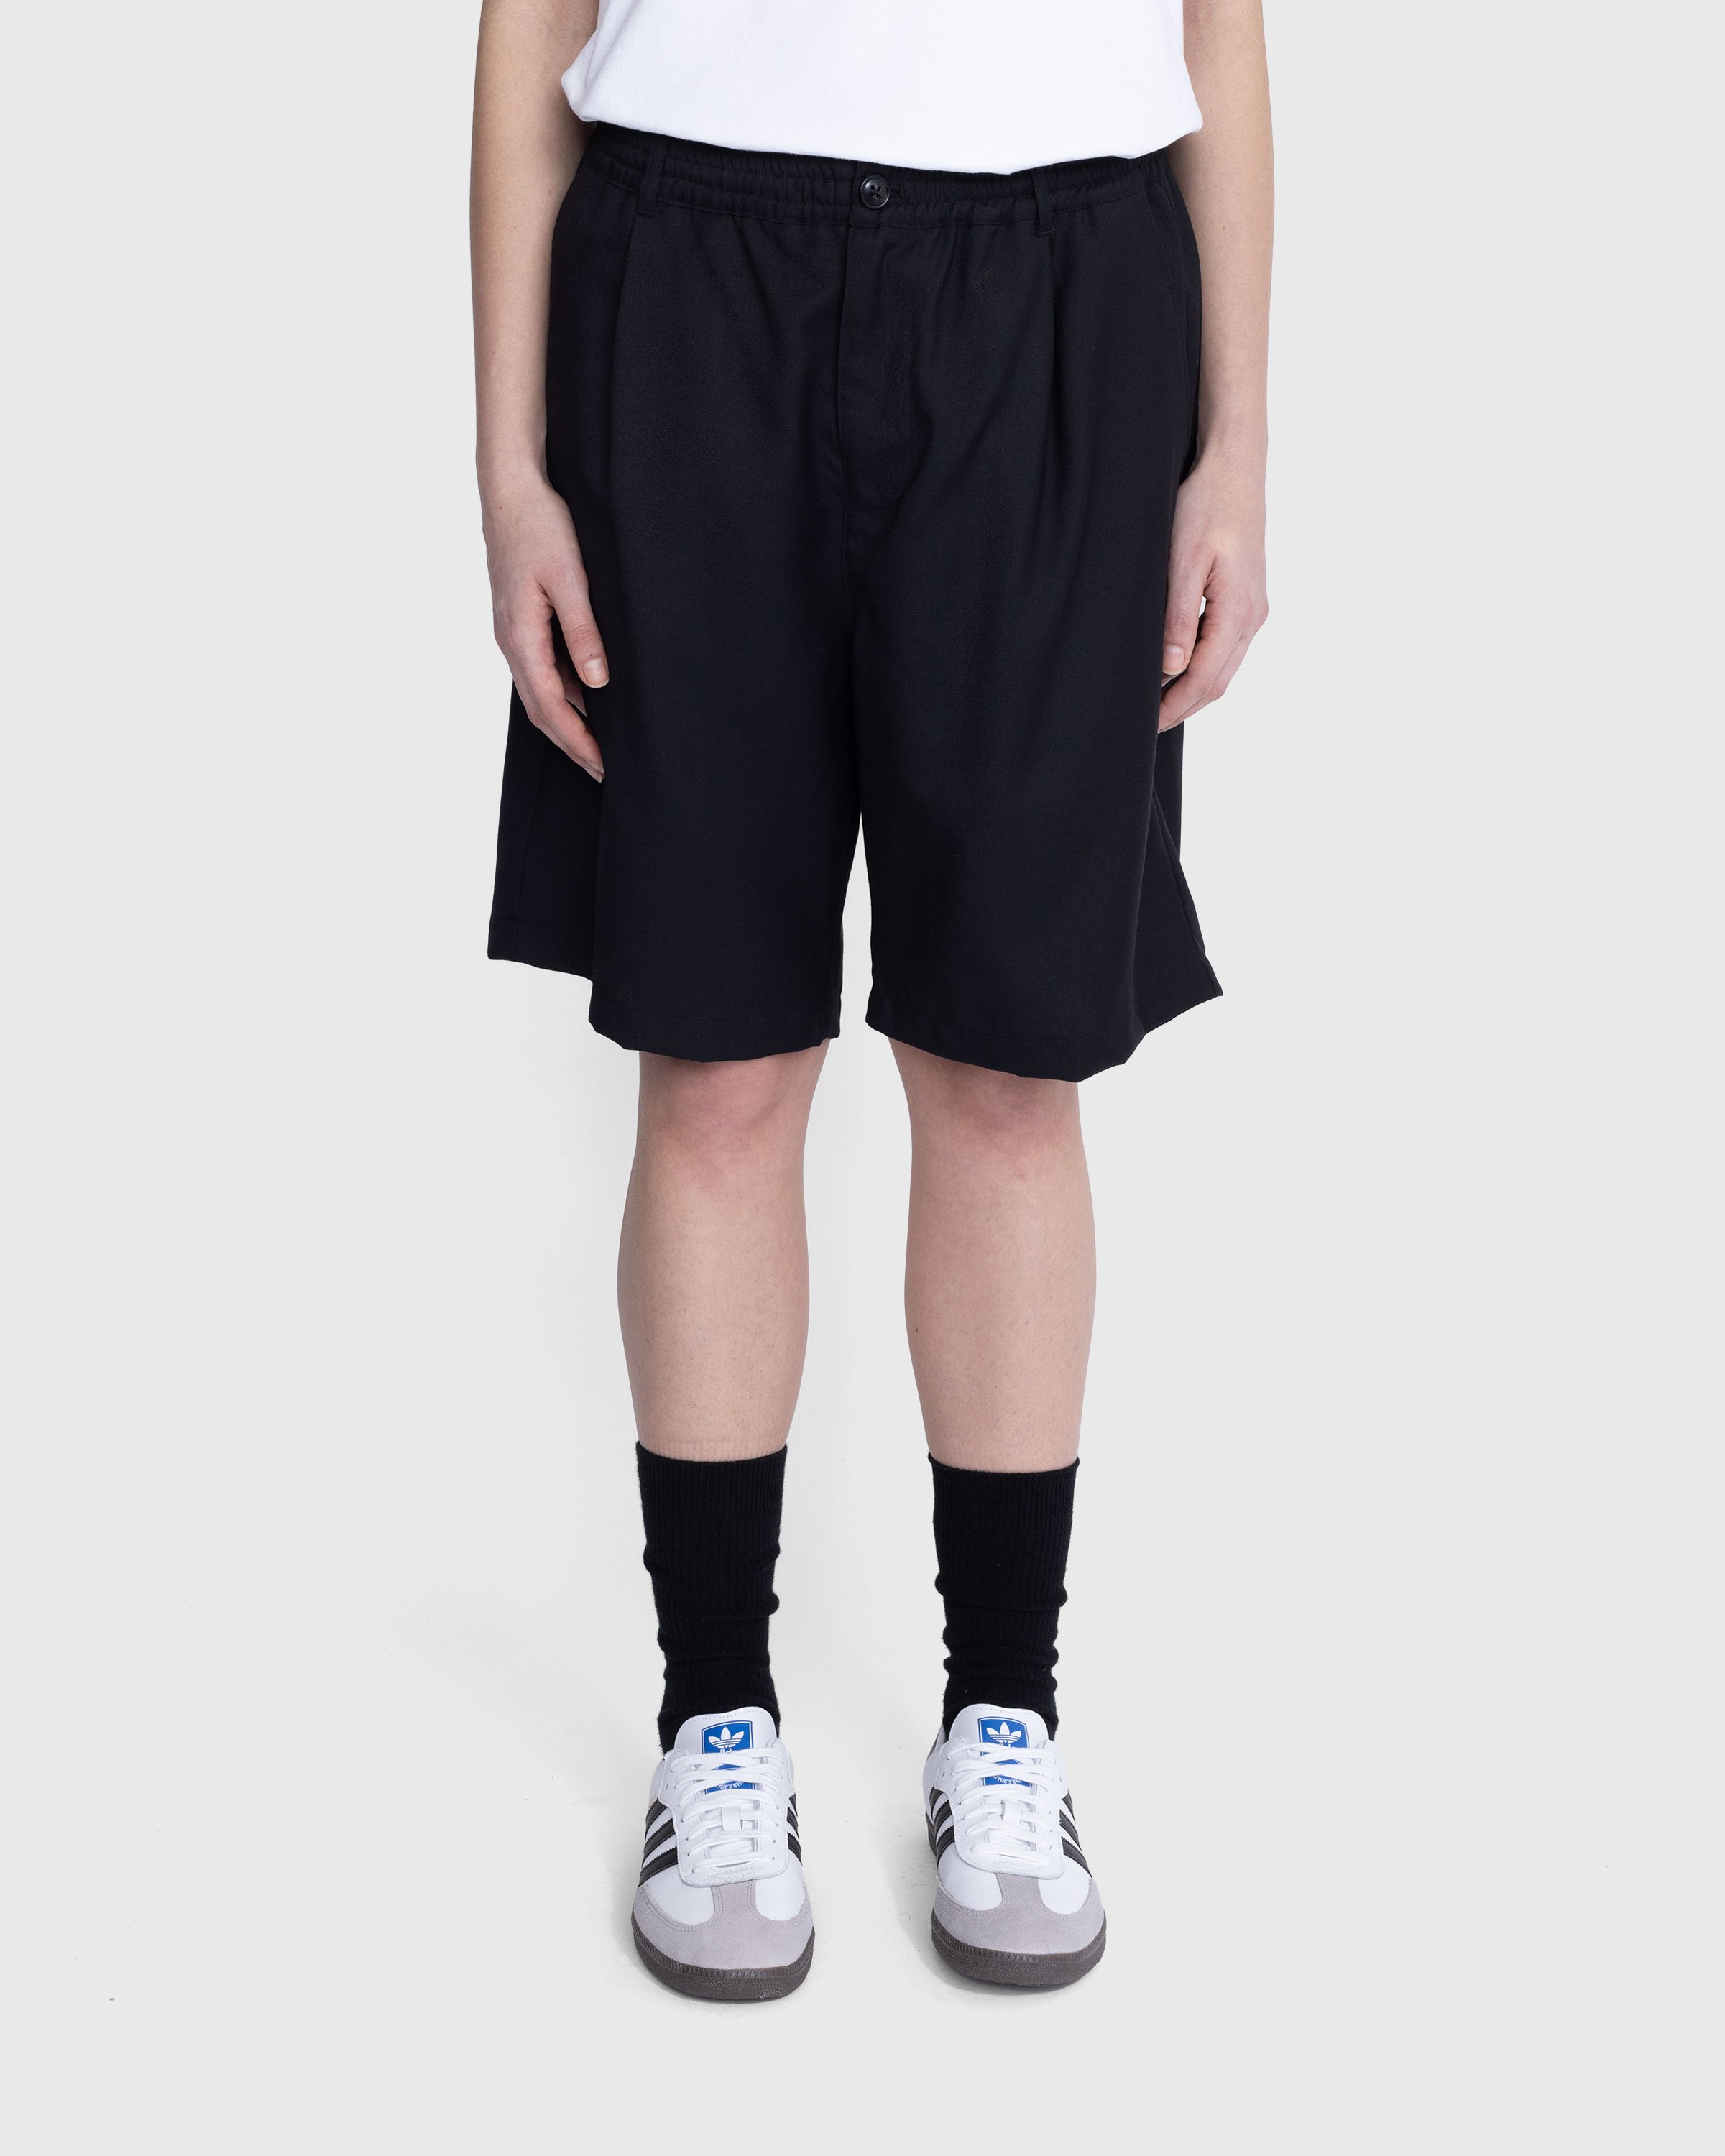 Highsnobiety - Tropical Wool Elastic Shorts Black - Clothing - Black - Image 7